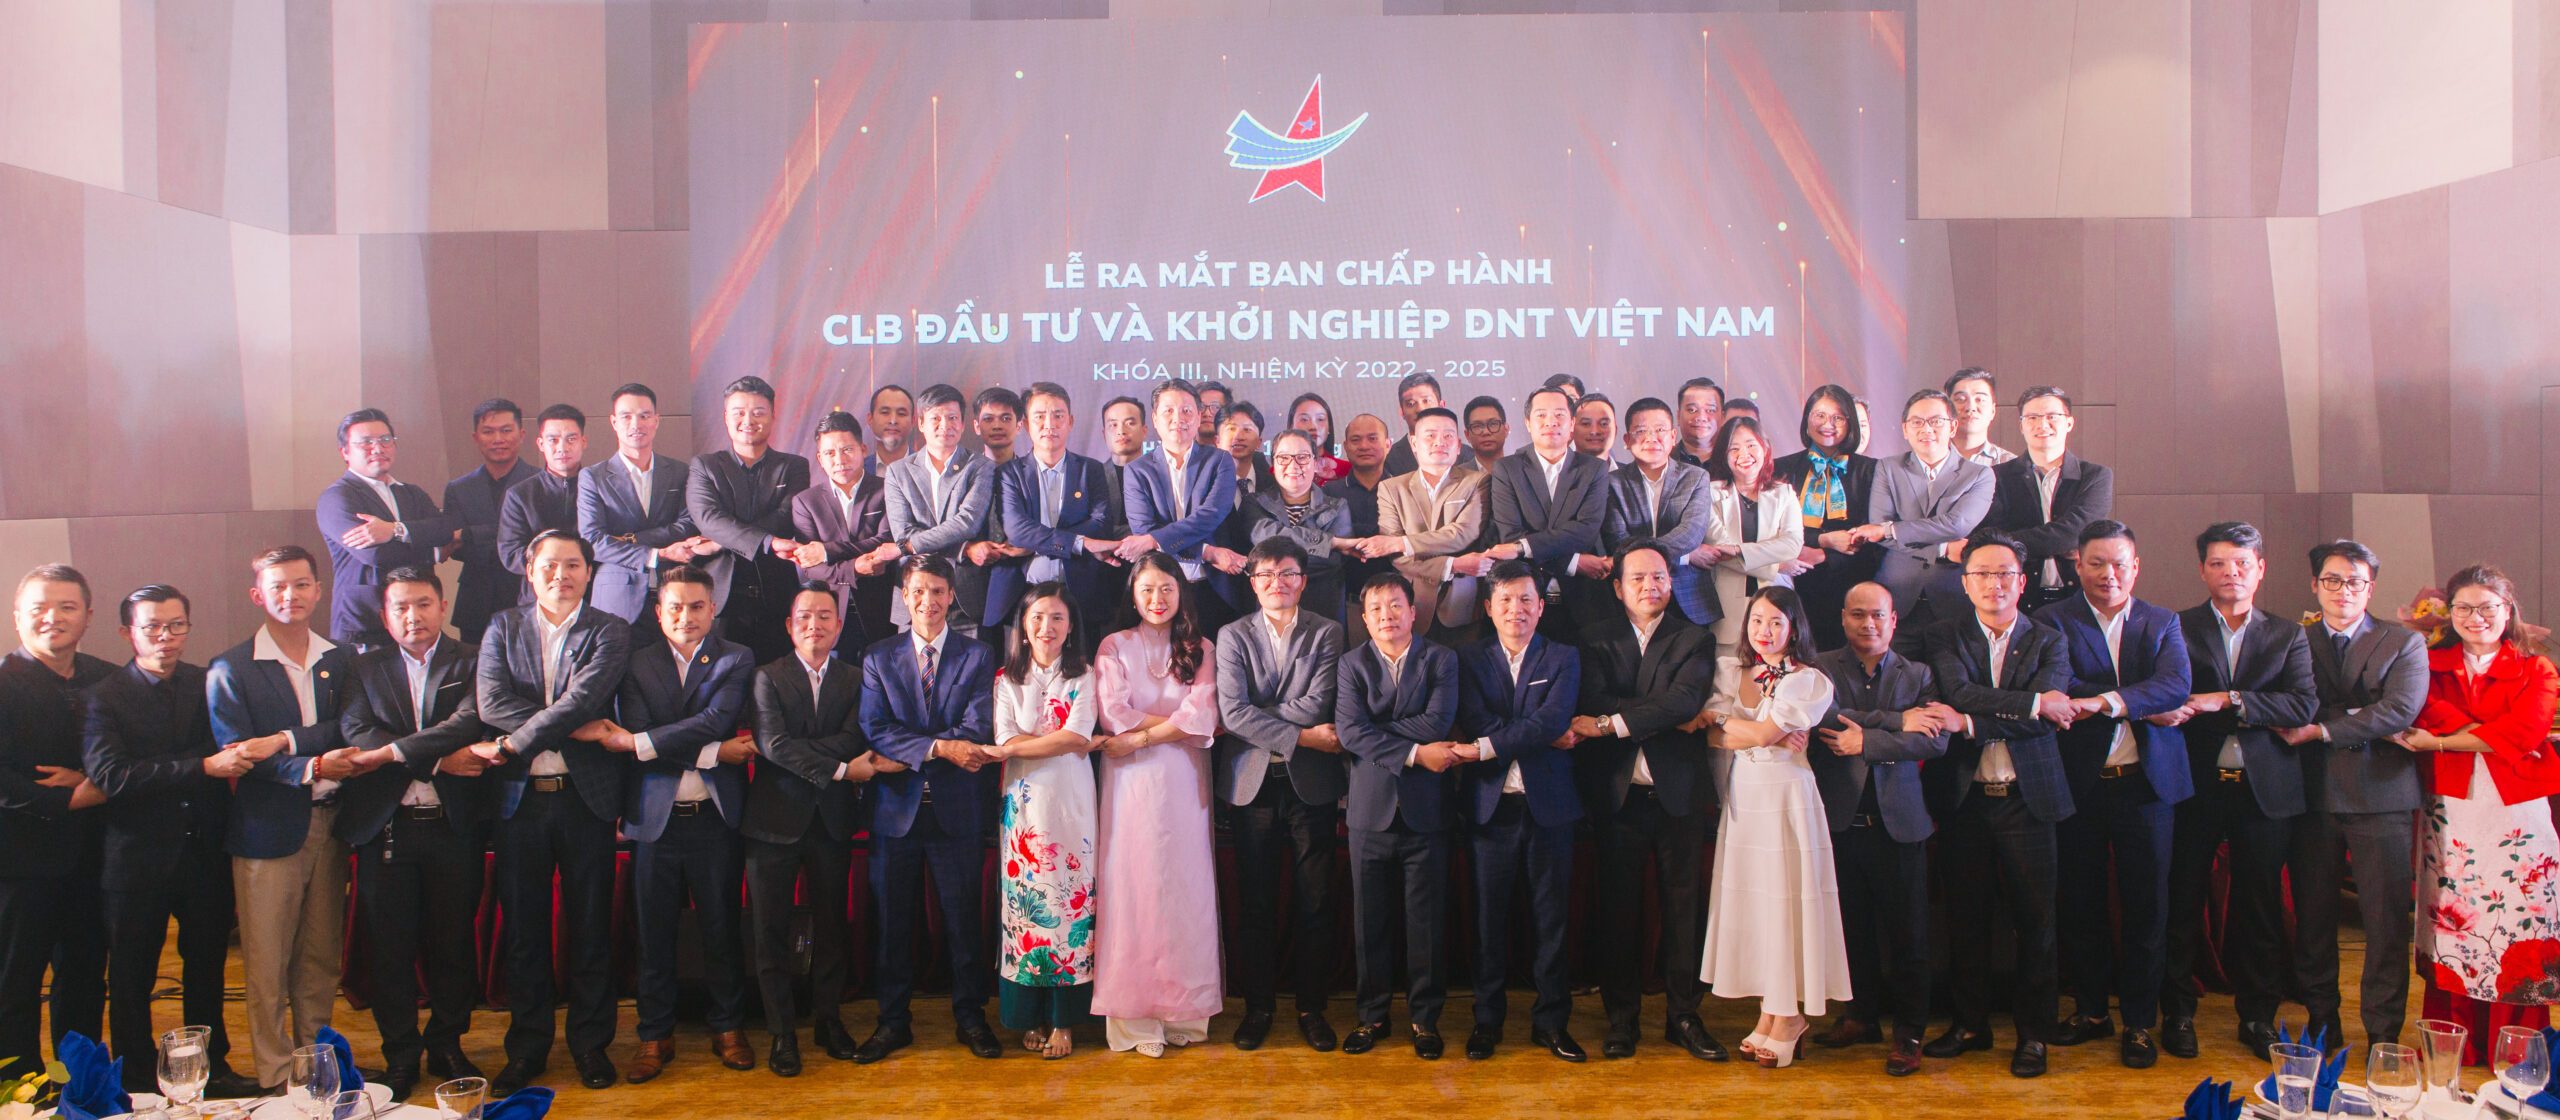 BCH CLB Đầu tư và Khởi nghiệp Doanh nhân trẻ Việt Nam khóa III ra mắt.